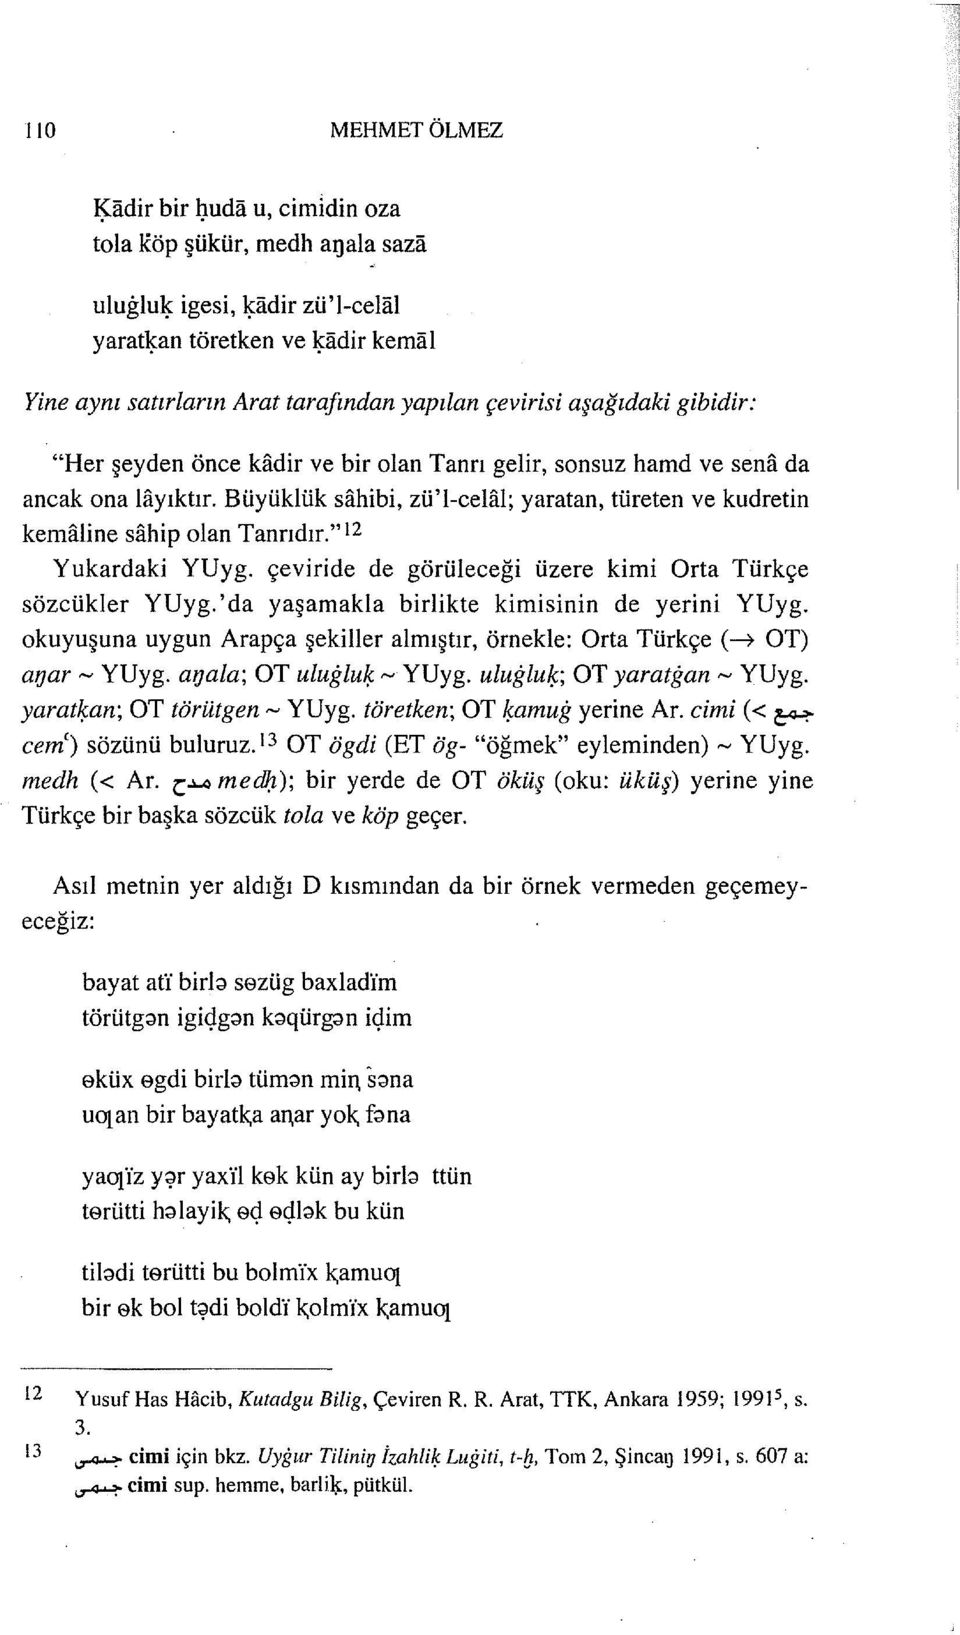 "12 Yukardaki YUyg. çeviride de görüleceği üzere kimi Orta Türkçe sözcükler YUyg.'da yaşamakla birlikte kimisinin de yerini YUyg.